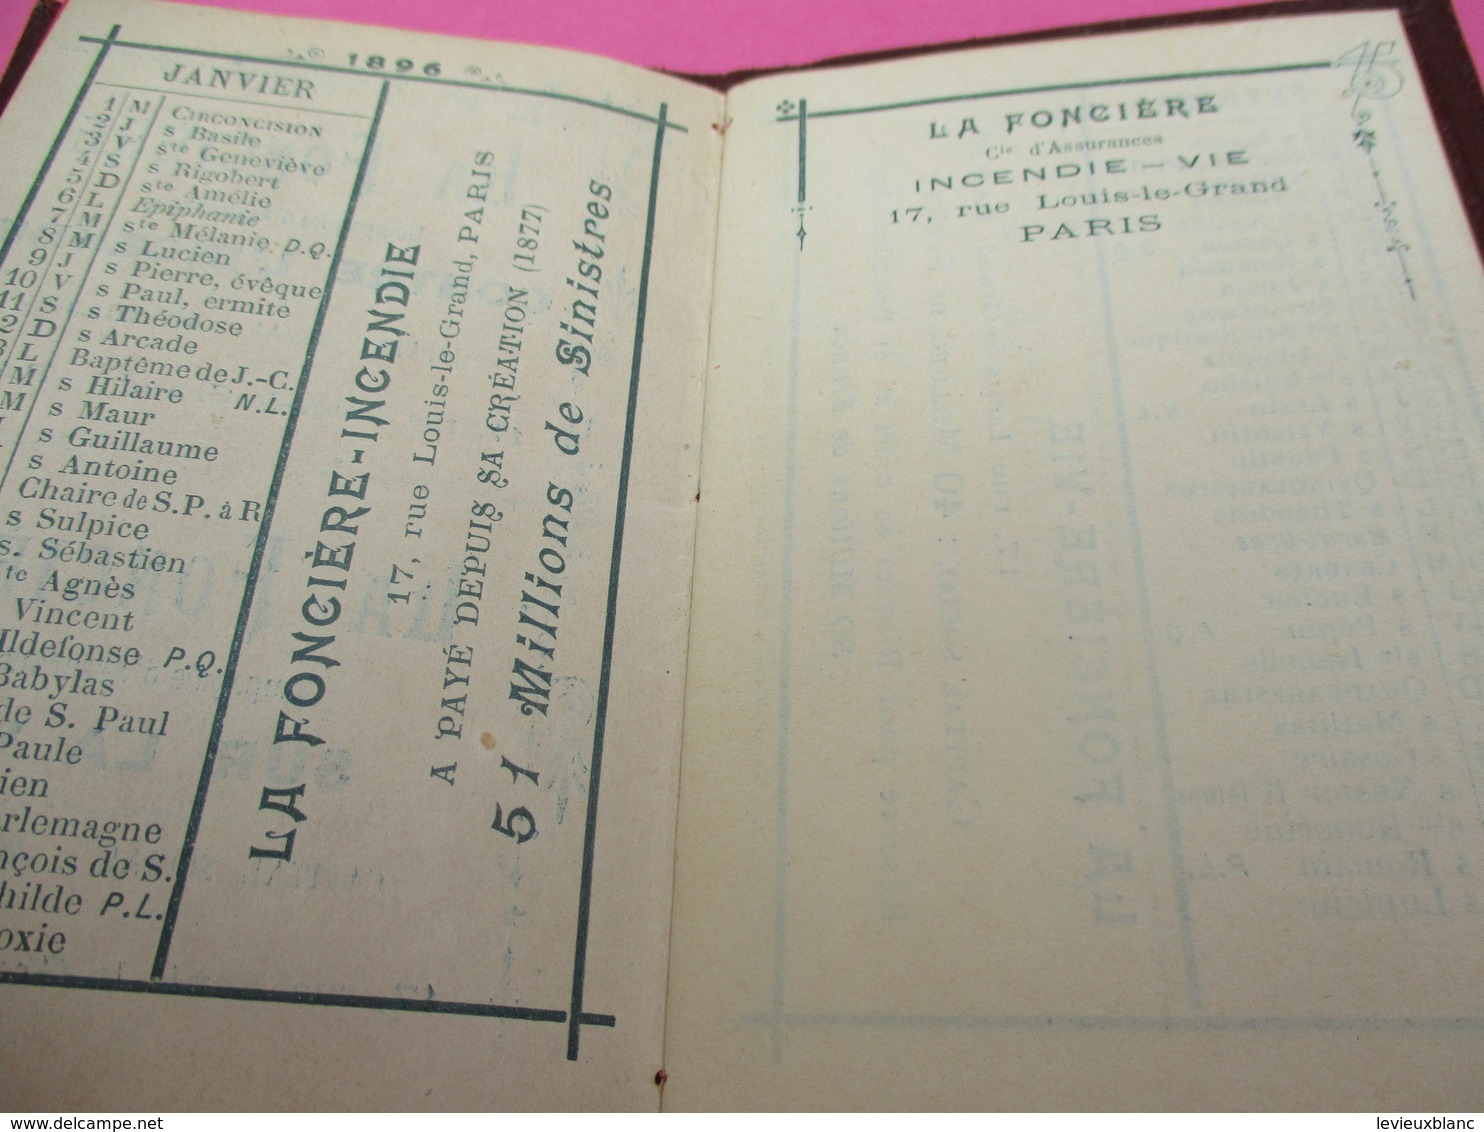 Assurances/ Petit Calendrier Ancien/La Fonciére/ Contre L'Incendie/ Sur La Vie/ 1896          CAL409 - Small : ...-1900